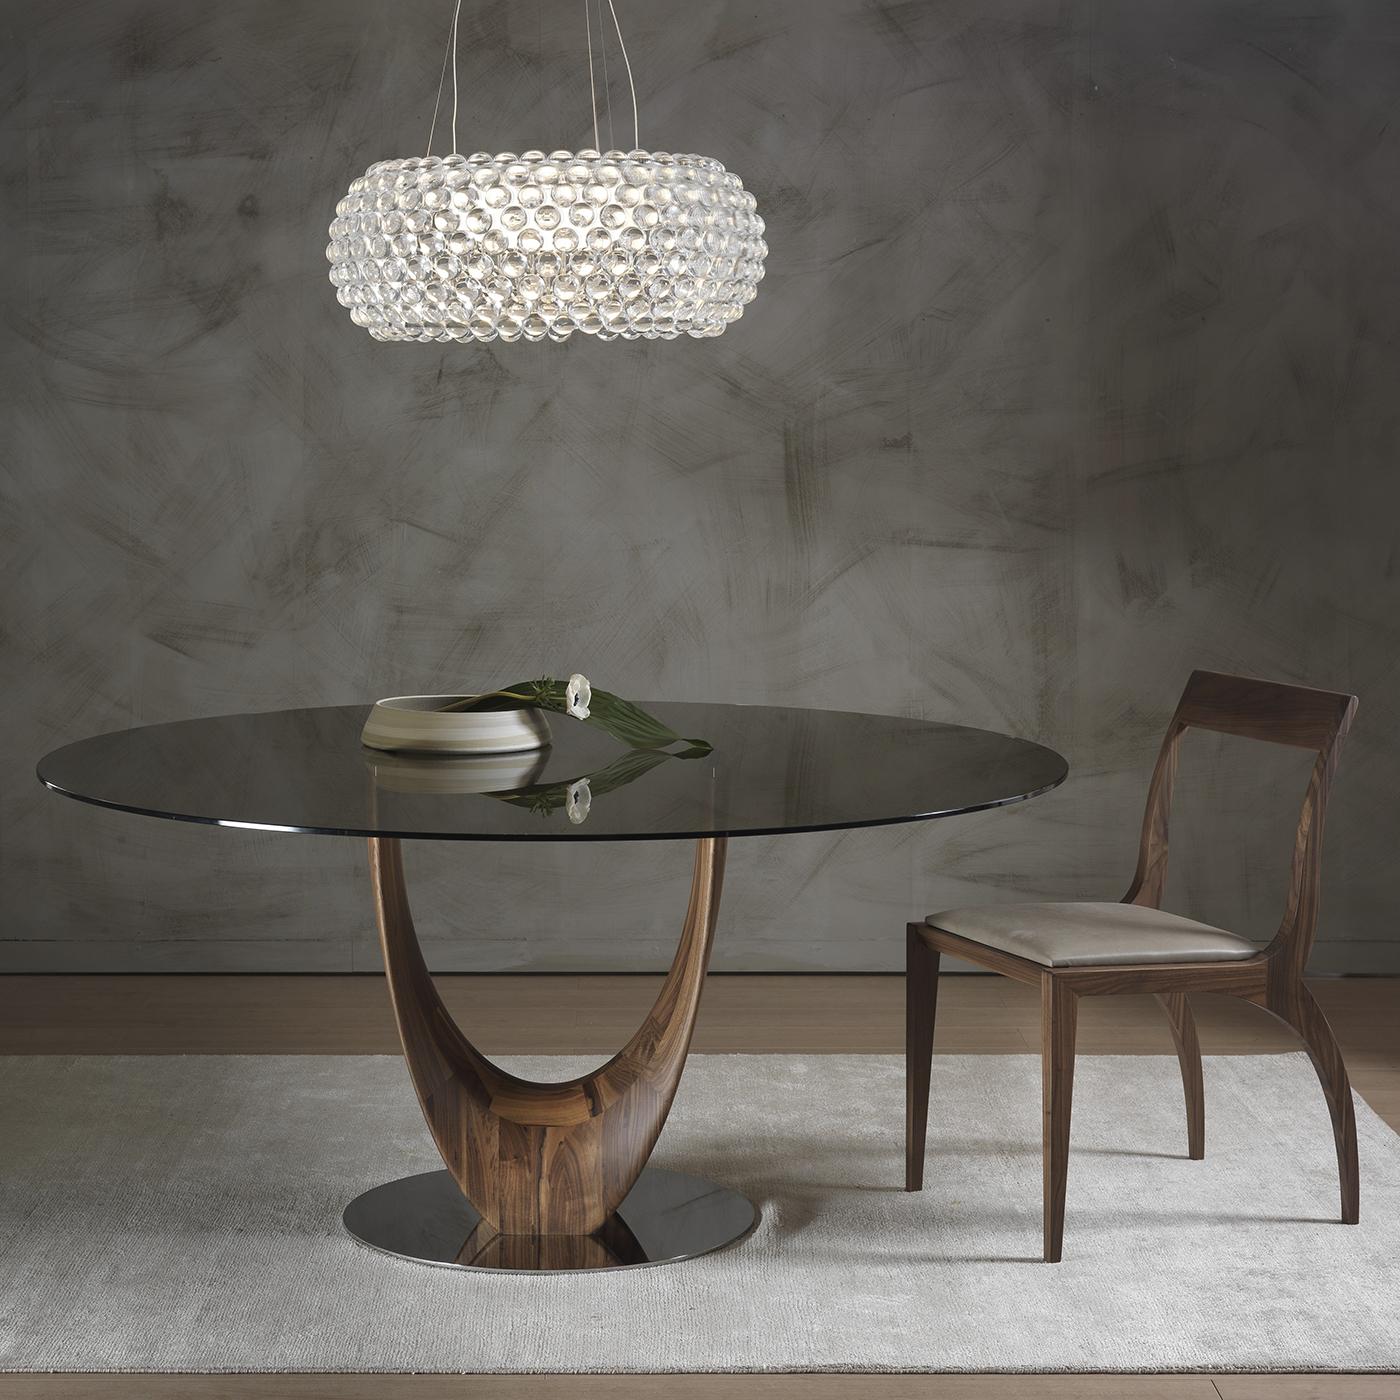 Cette table de salle à manger élégante et moderne conçue par Stefano Bigi est dotée d'une superbe base en noyer Canaletto massif. La structure repose sur un élément rond en métal chromé et se courbe pour former deux pieds séparés qui créent une